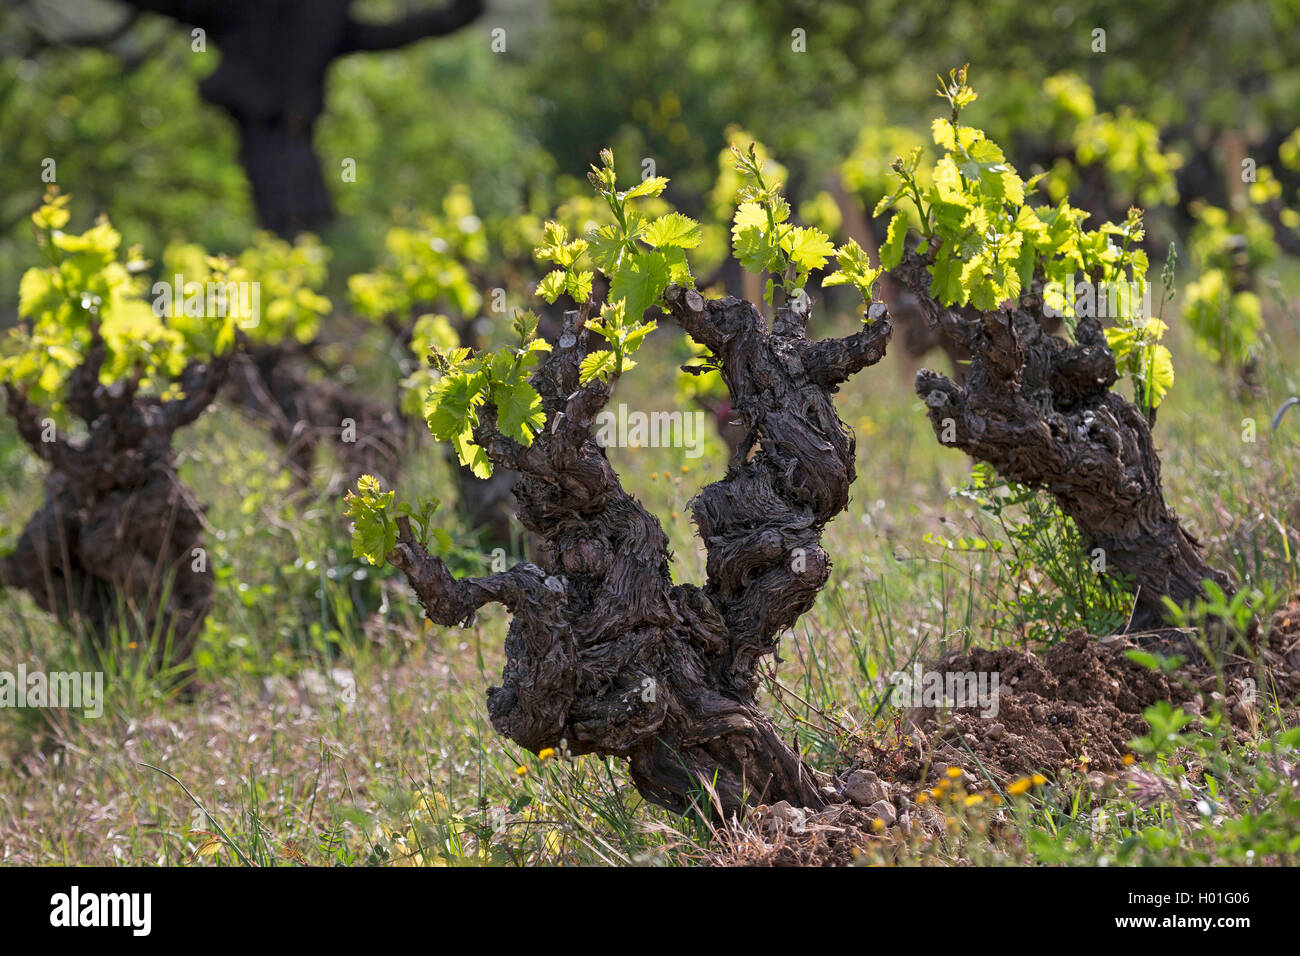 Vigne raisin, vigne (Vitis vinifera), l'analyse des feuilles au printemps, France, Languedoc-Roussillon Banque D'Images